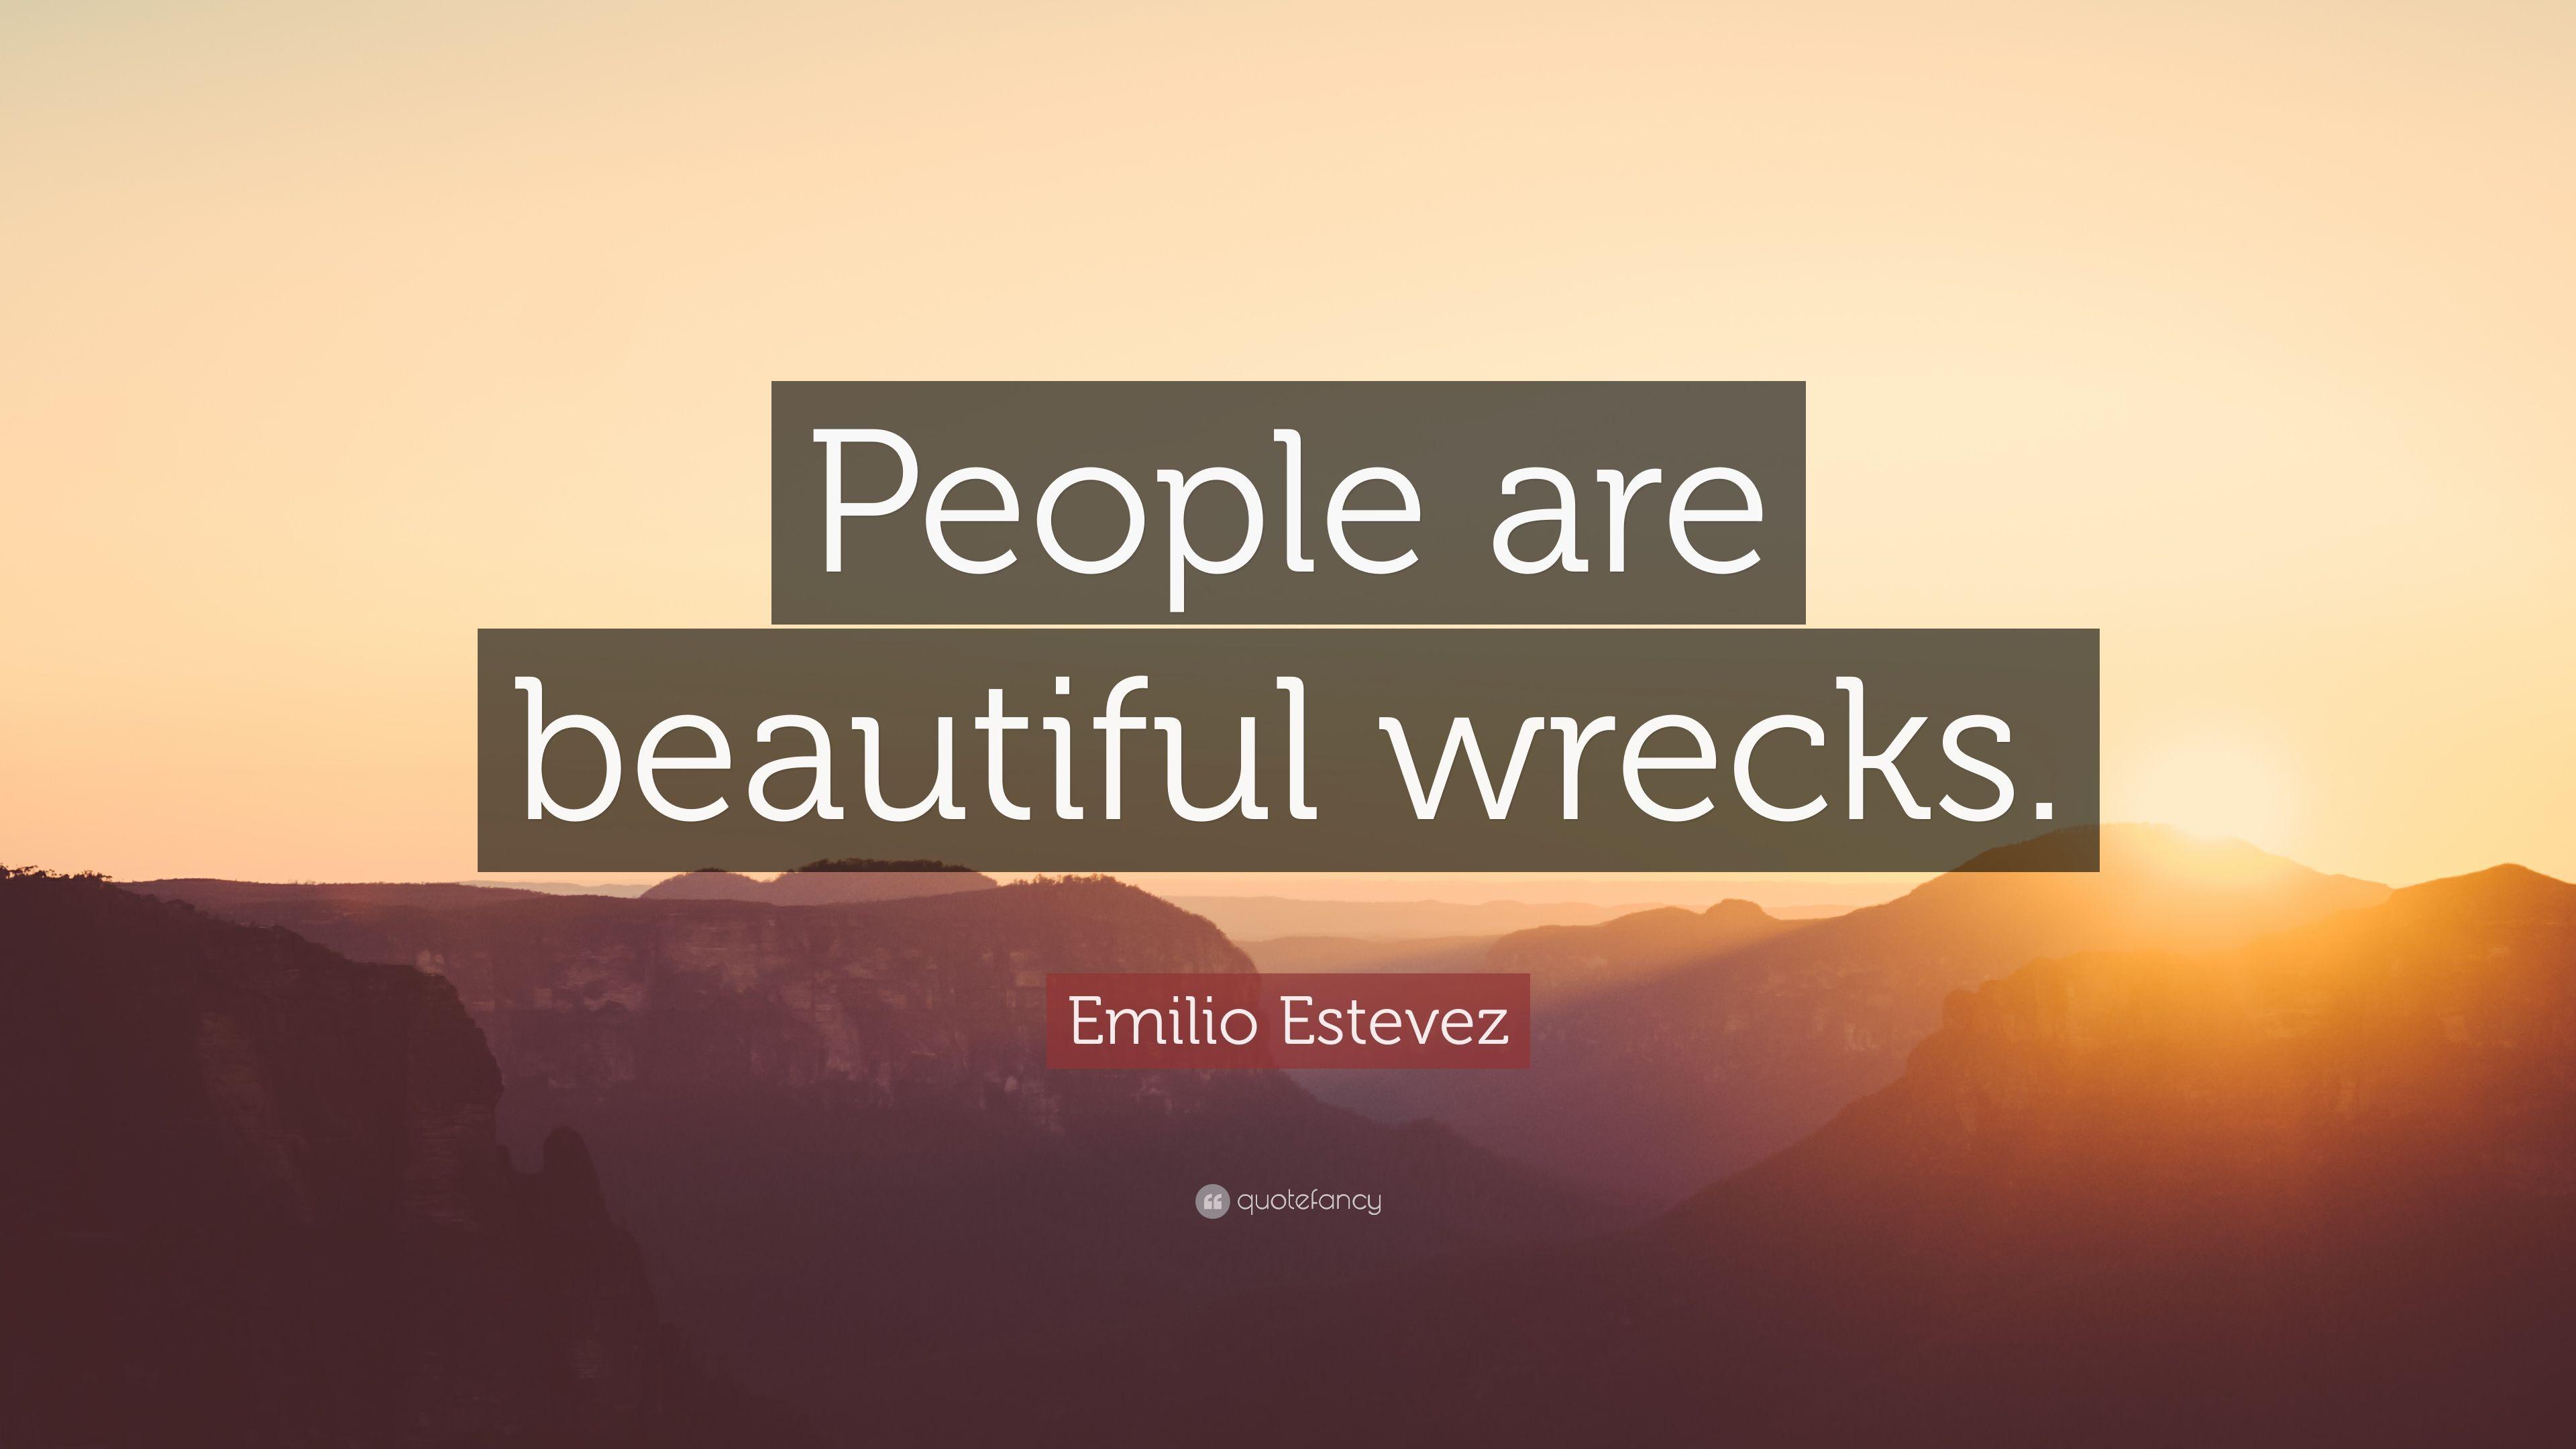 Emilio Estevez Quote: “People are beautiful wrecks.” 7 wallpaper